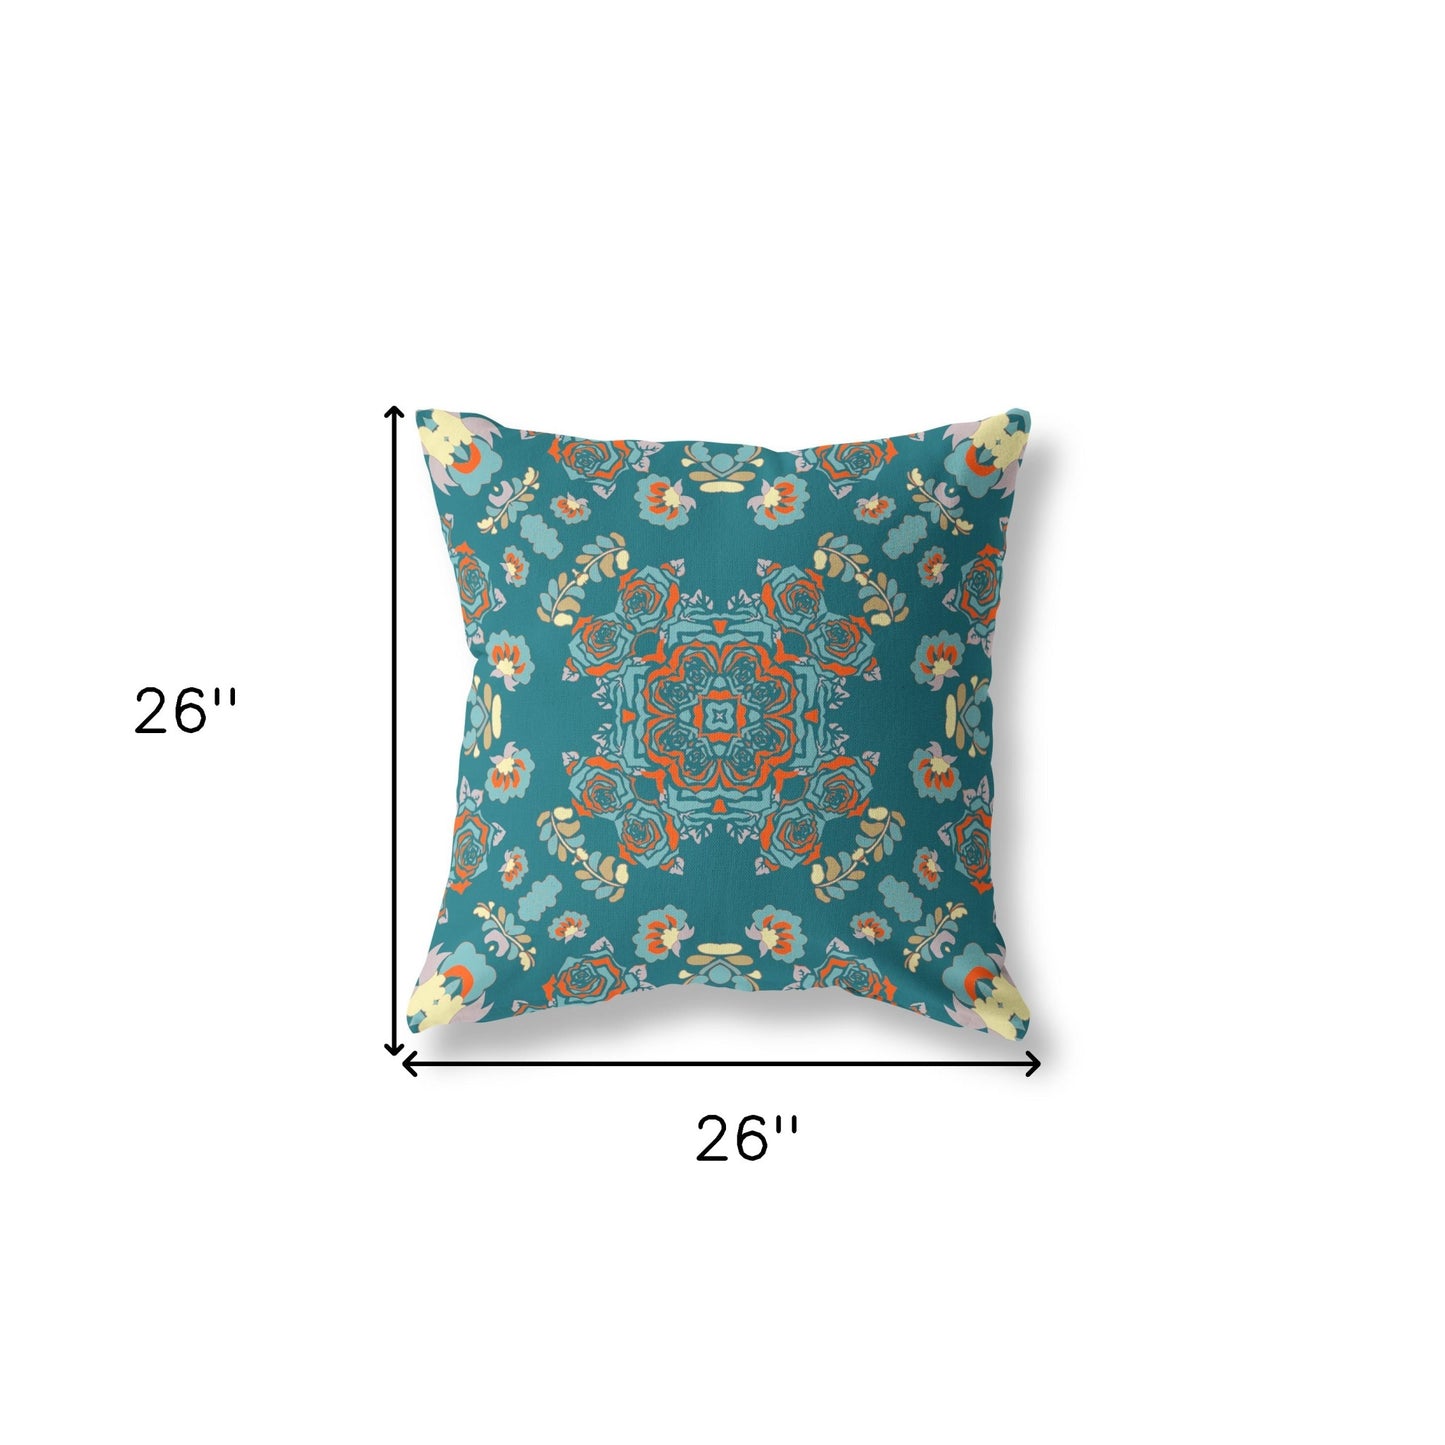 18” Teal Orange Wreath Indoor Outdoor Zippered Throw Pillow